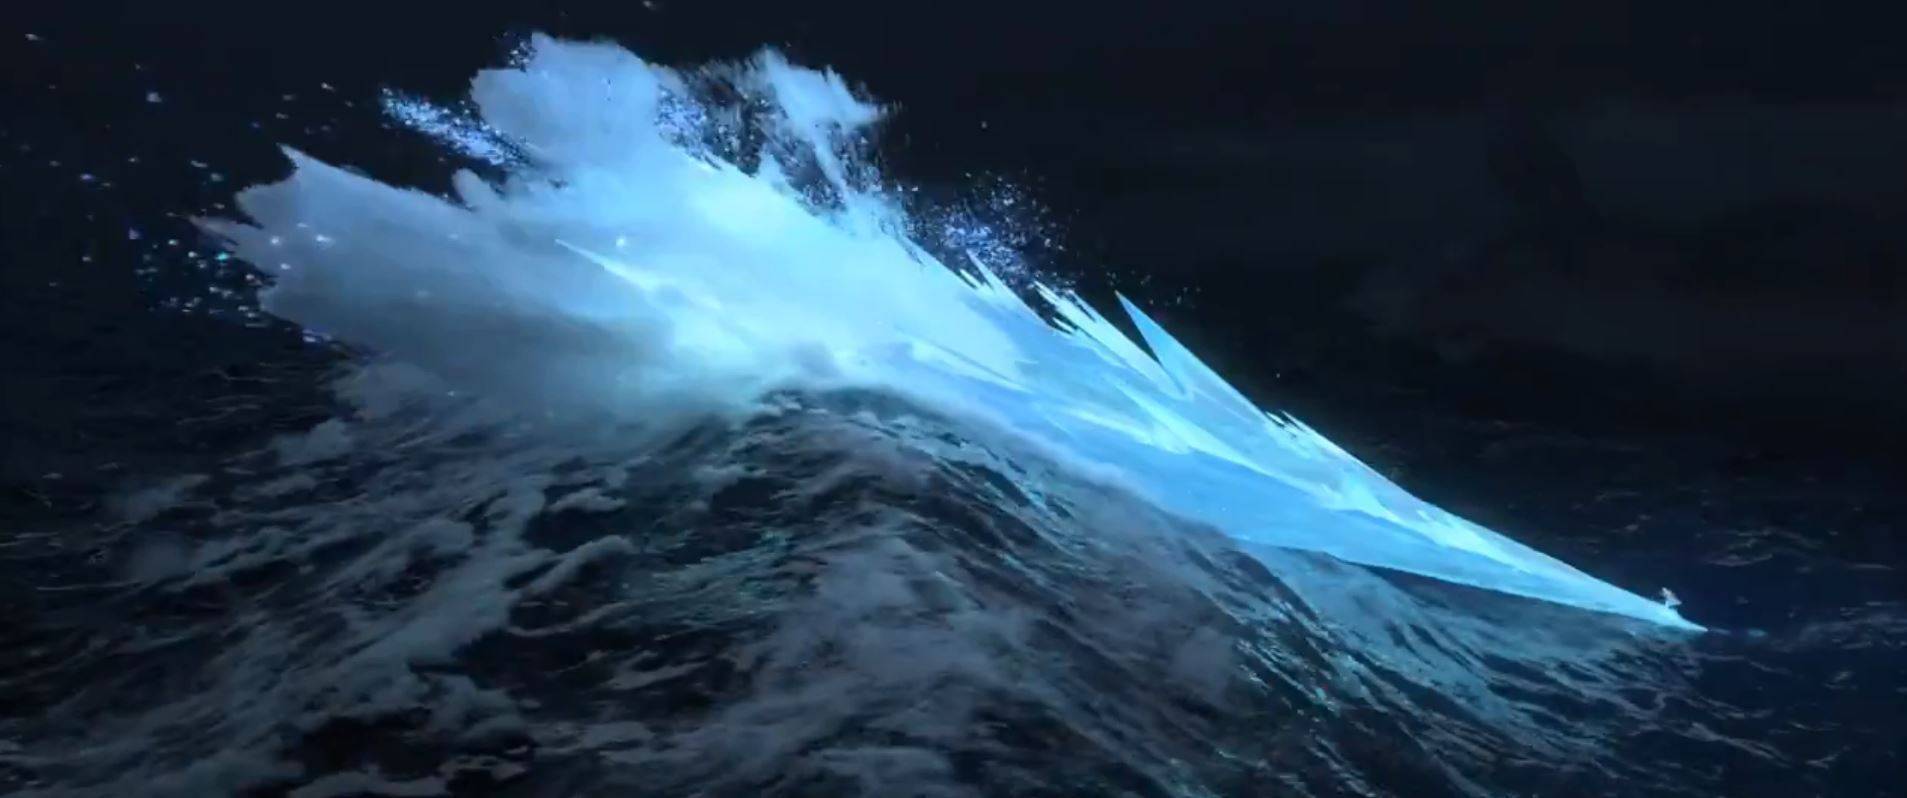 Ghiaccio sulle onde del mare formatosi grazie ad Elsa.